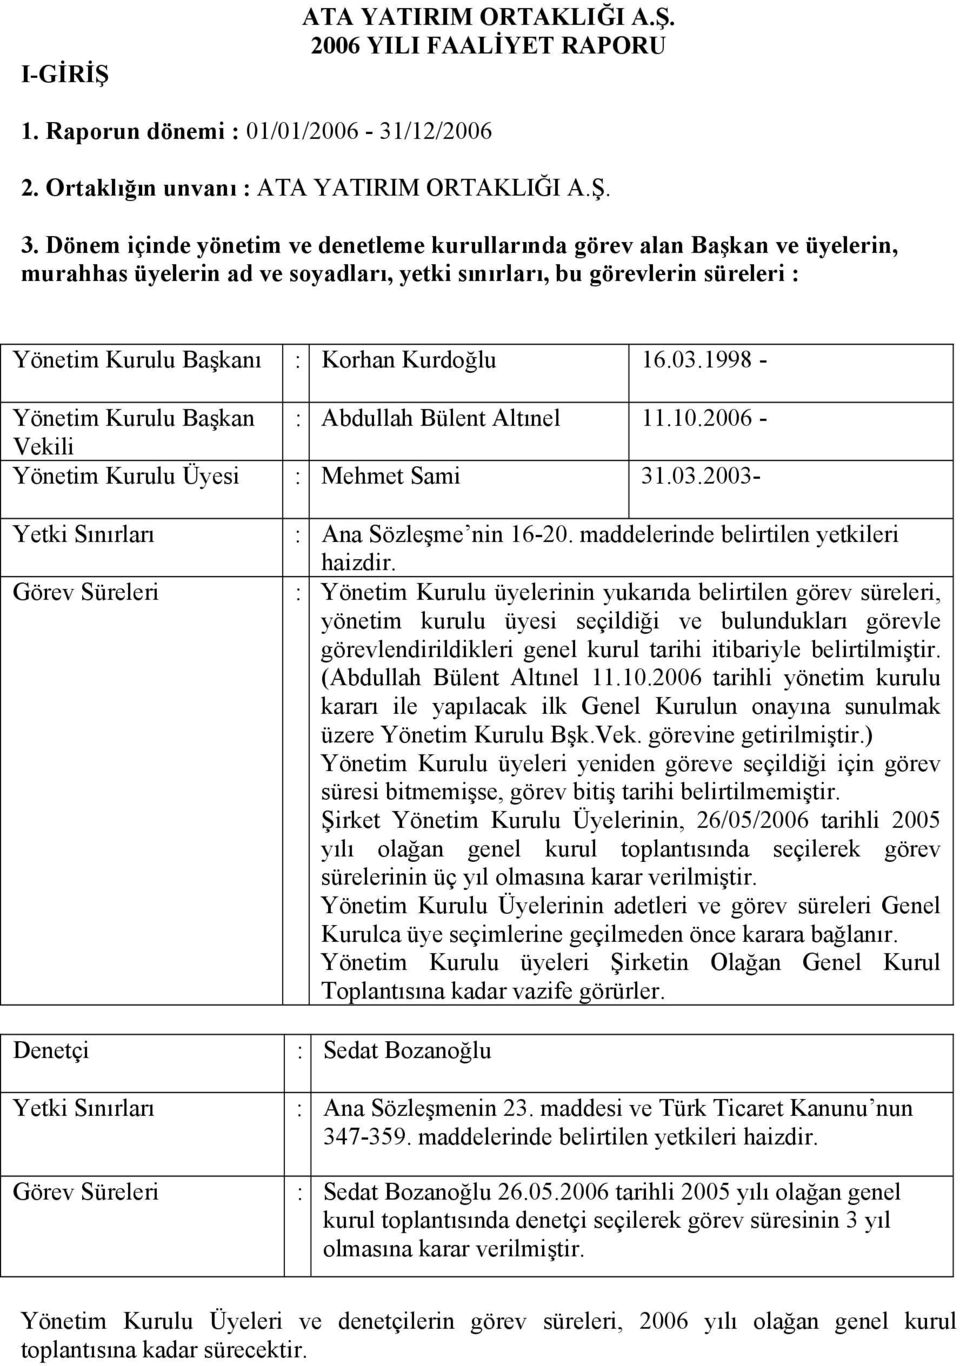 03.1998 - Yönetim Kurulu Başkan : Abdullah Bülent Altınel 11.10.2006 - Vekili Yönetim Kurulu Üyesi : Mehmet Sami 31.03.2003- Yetki Sınırları : Ana Sözleşme nin 16-20.